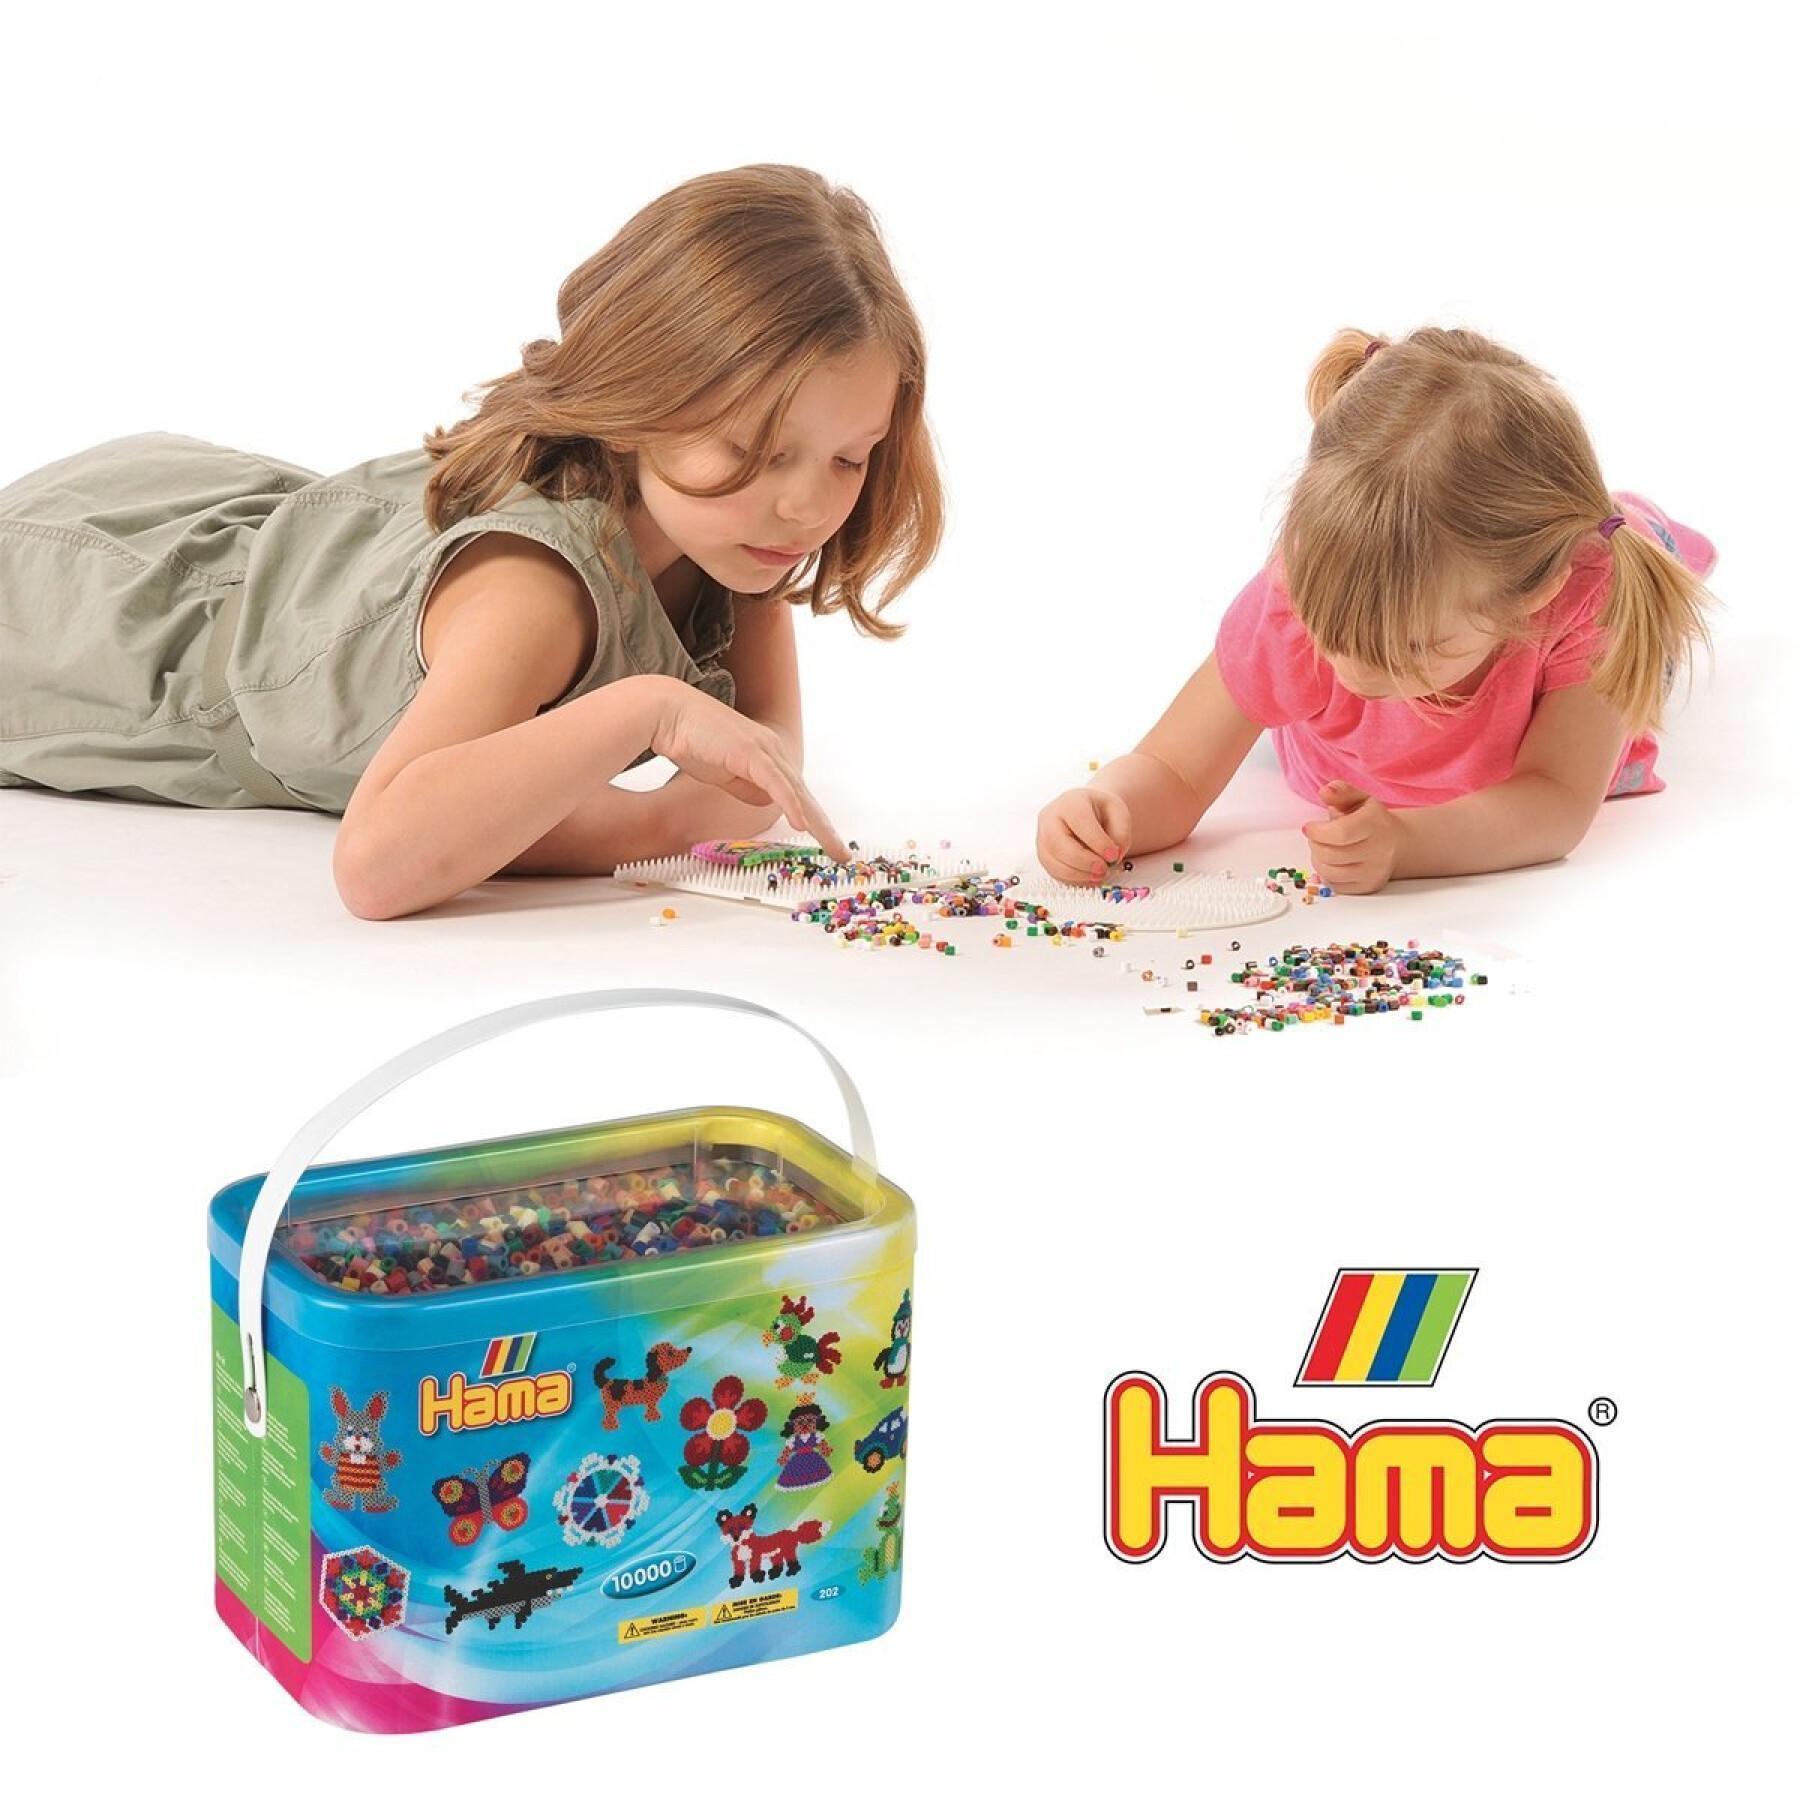 10000 hama beads 22 colors Jbm Sarl Baril